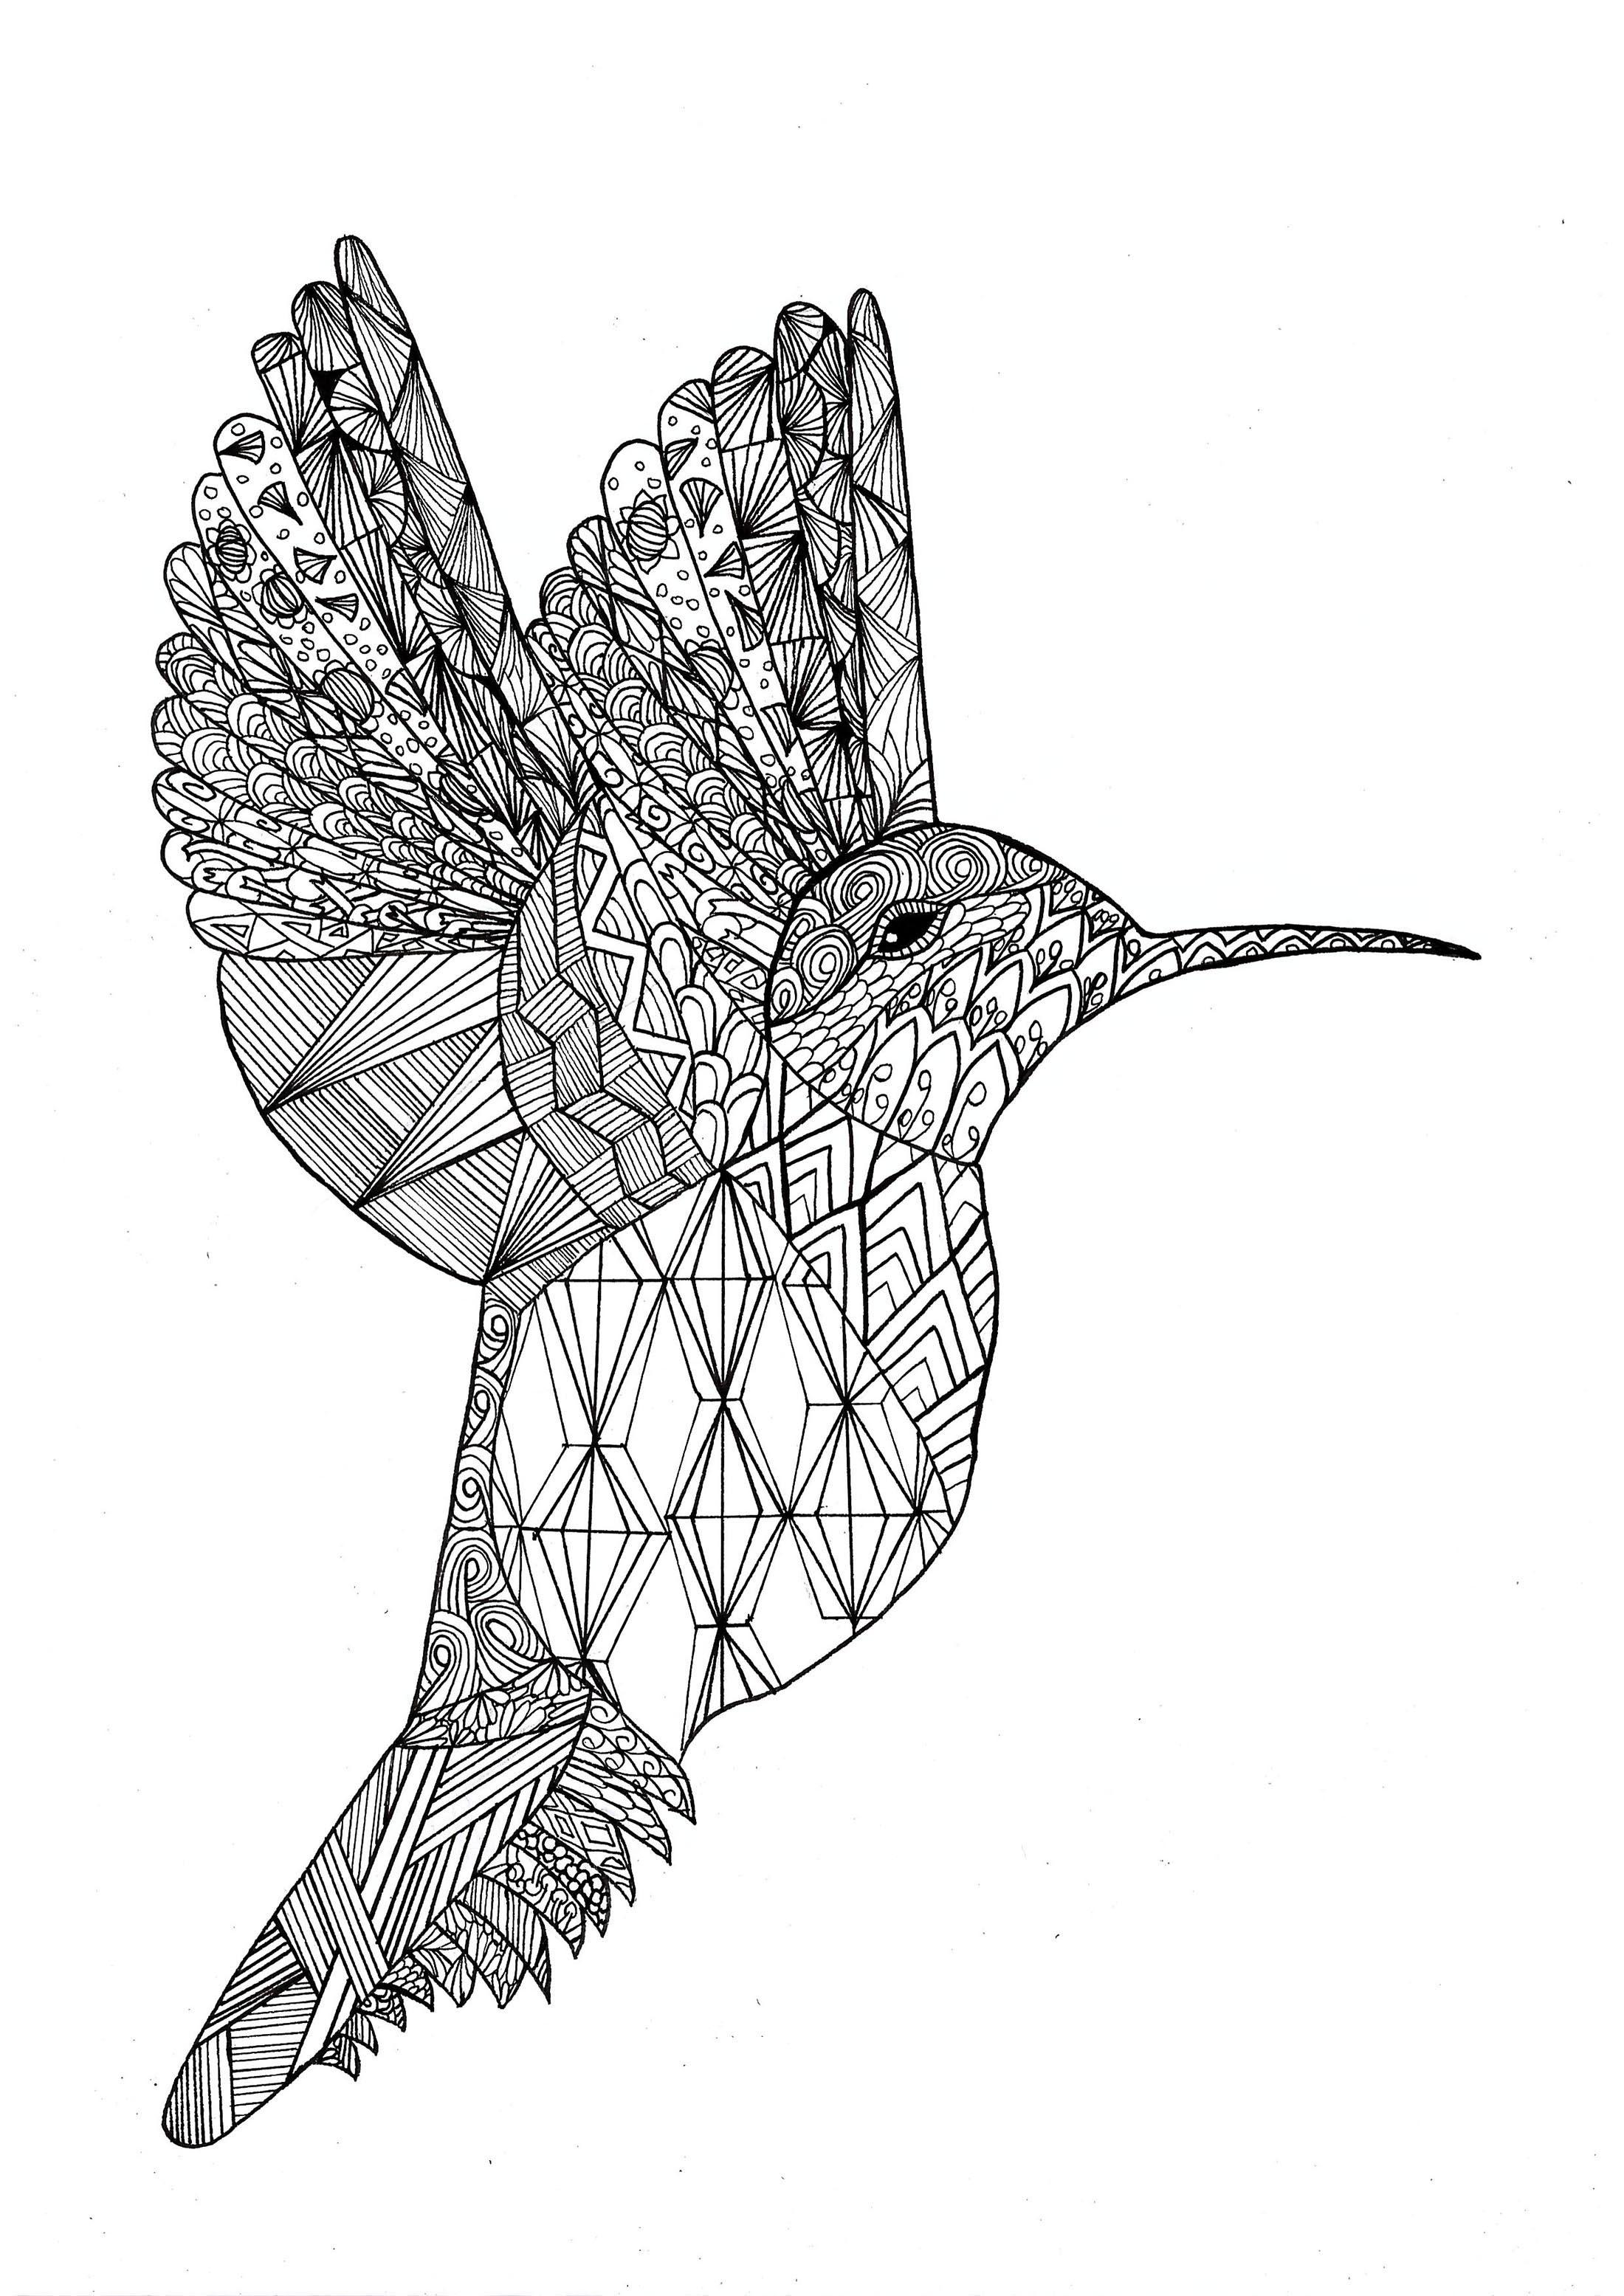 Dibujos para colorear gratis de Pássaros para imprimir y colorear